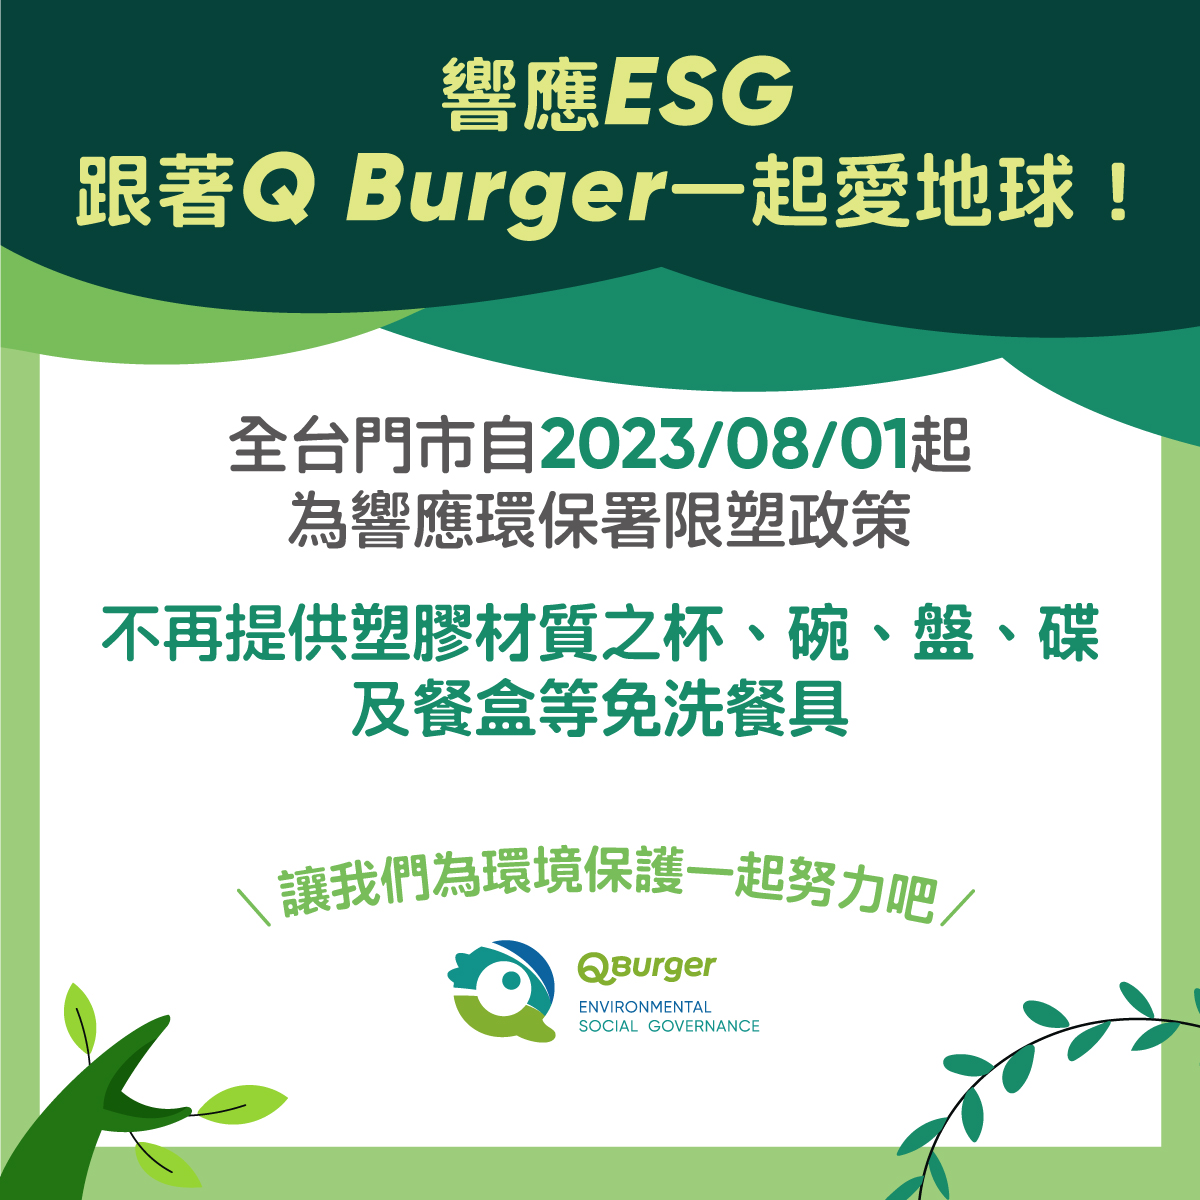 跟著Q Burger 環保愛地球